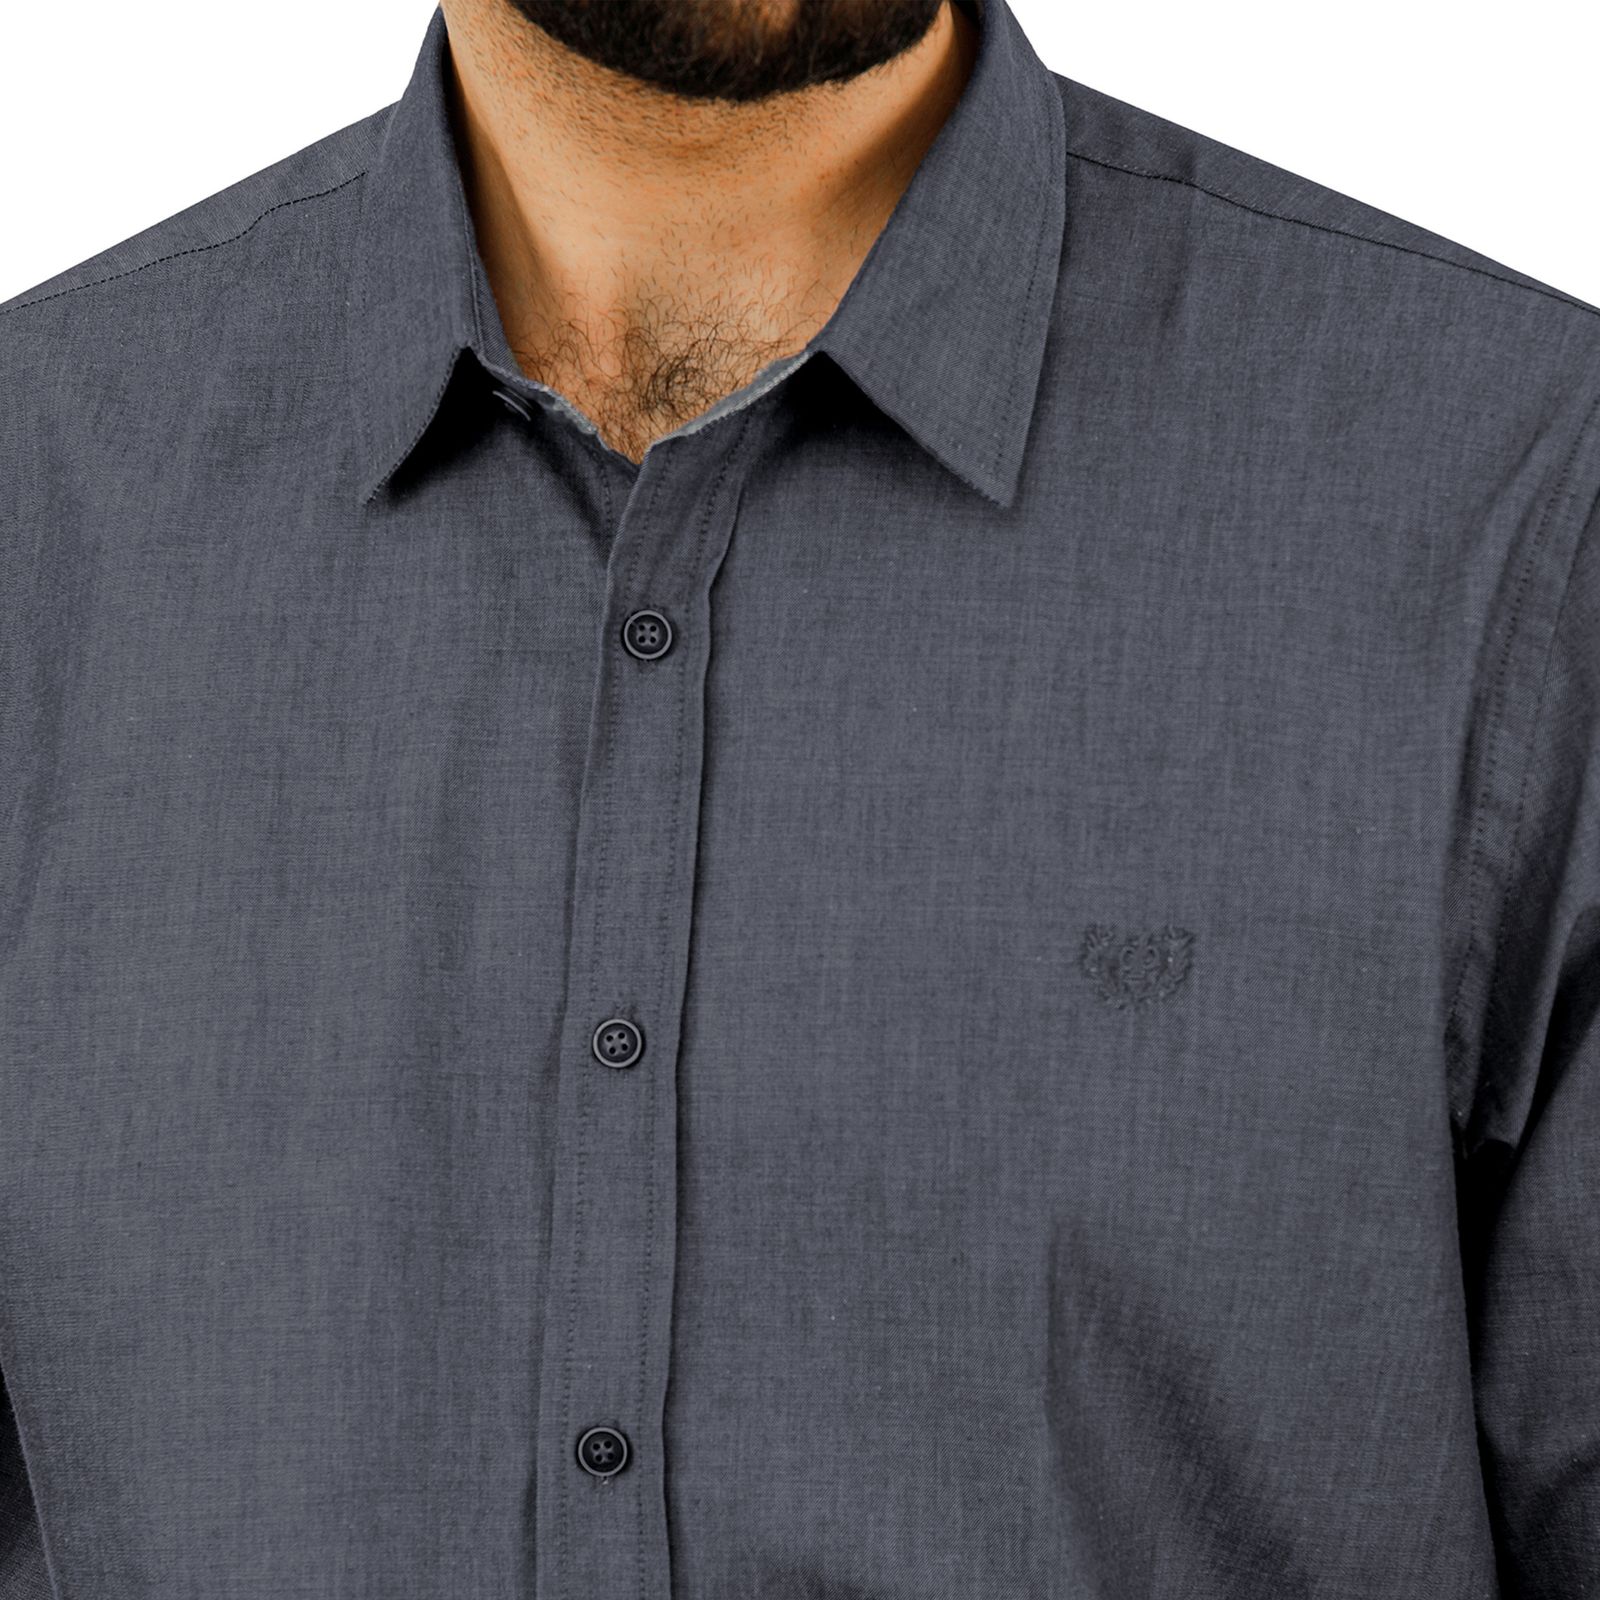 پیراهن آستین بلند مردانه پاتن جامه مدل 102721020242270 -  - 4